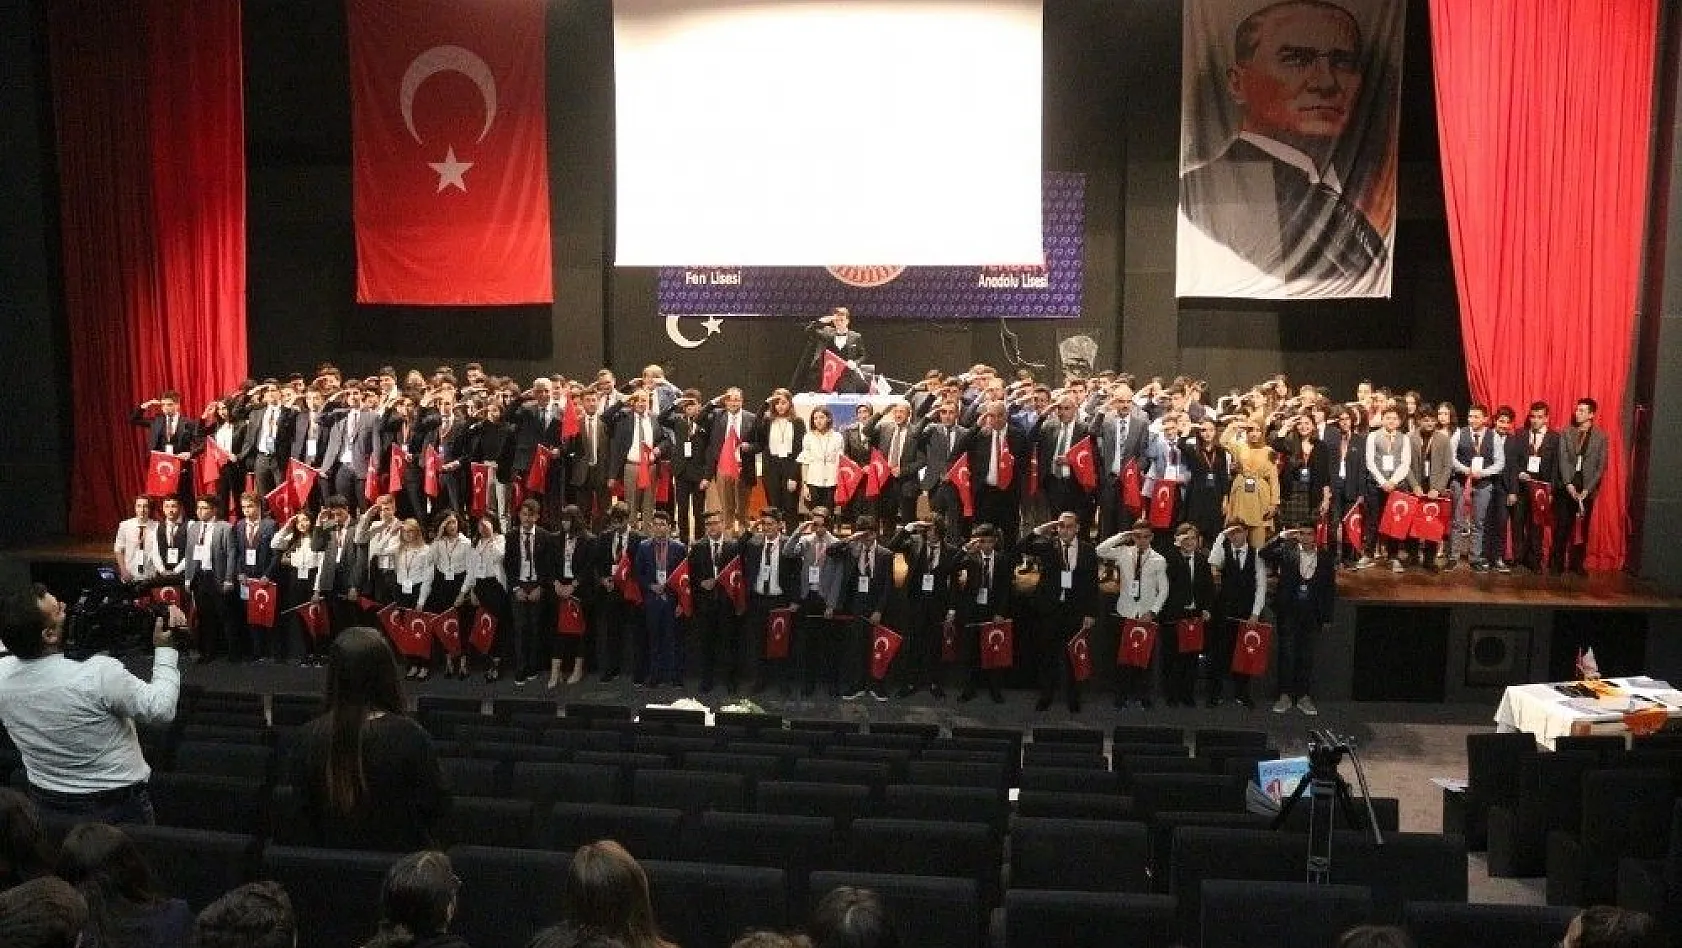 Tekden Eğitim Kurumları Yönetim Kurulu Başkanı Kemal Tekden:'Emperyalizme boyun eğmeyen tek millet Türk Milletidir'
